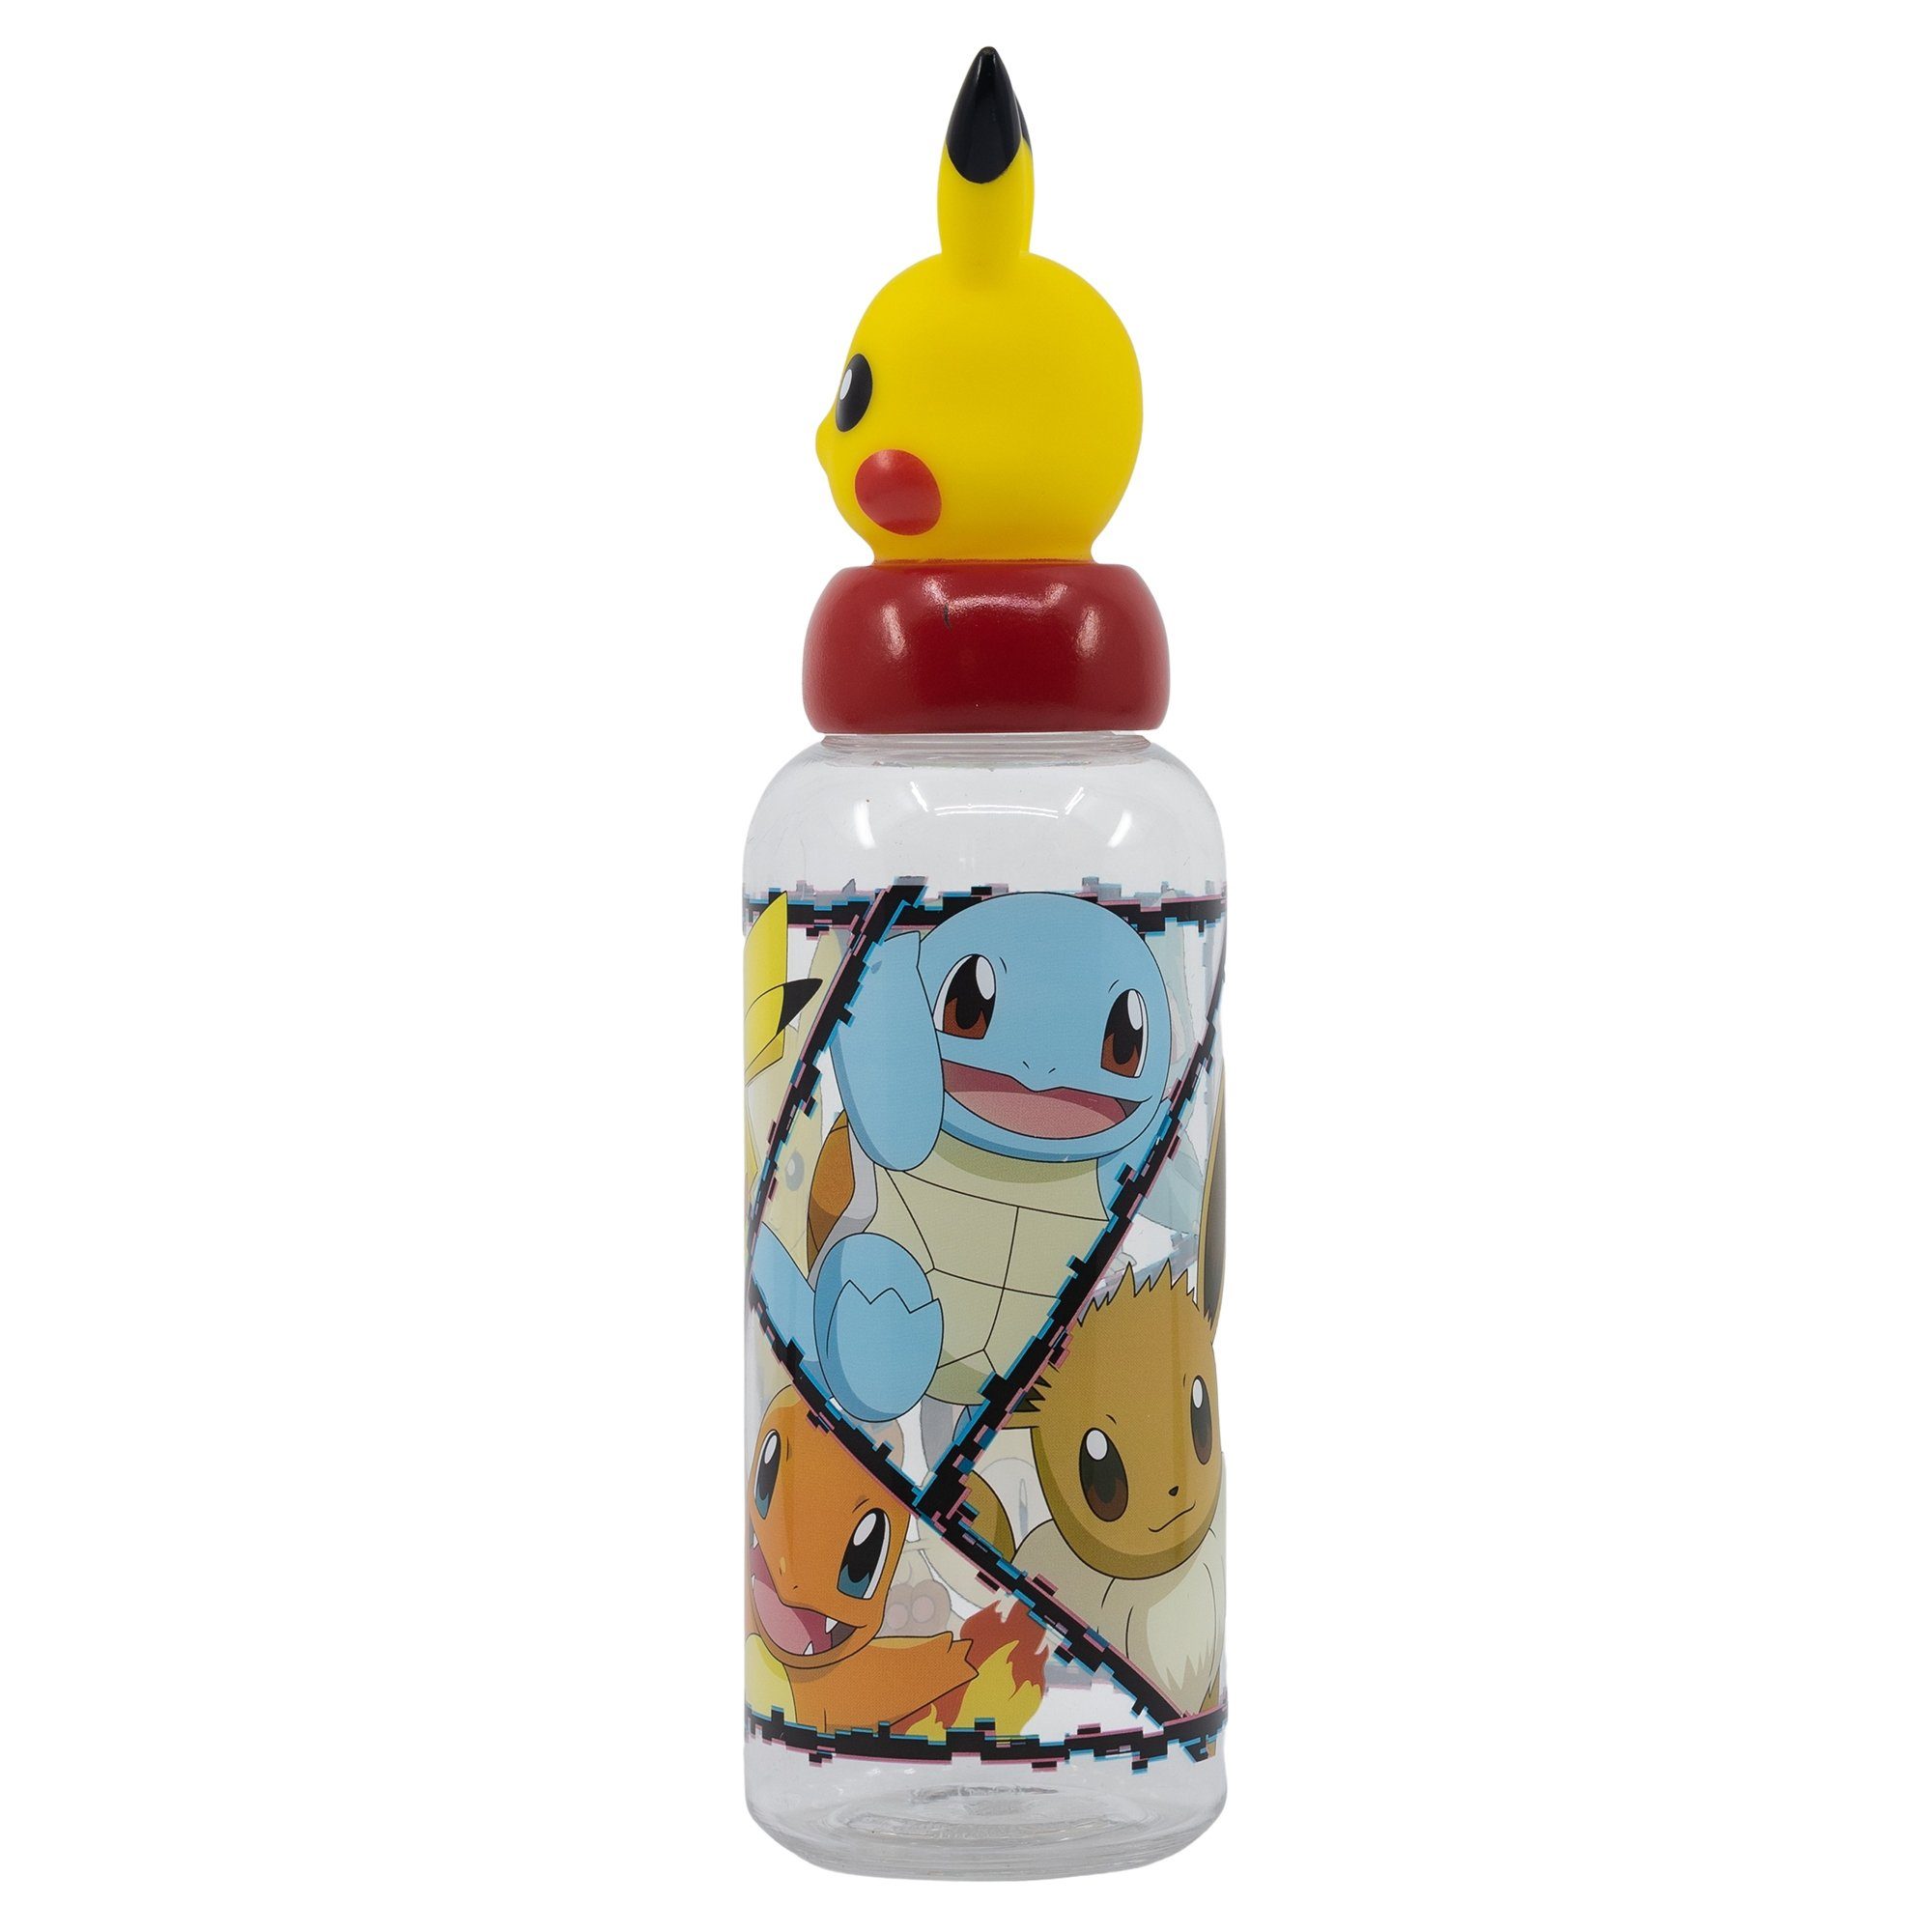 Pikachu 3D POKÉMON Trinkflasche Kinder Deckel Pokemon Wasserflasche